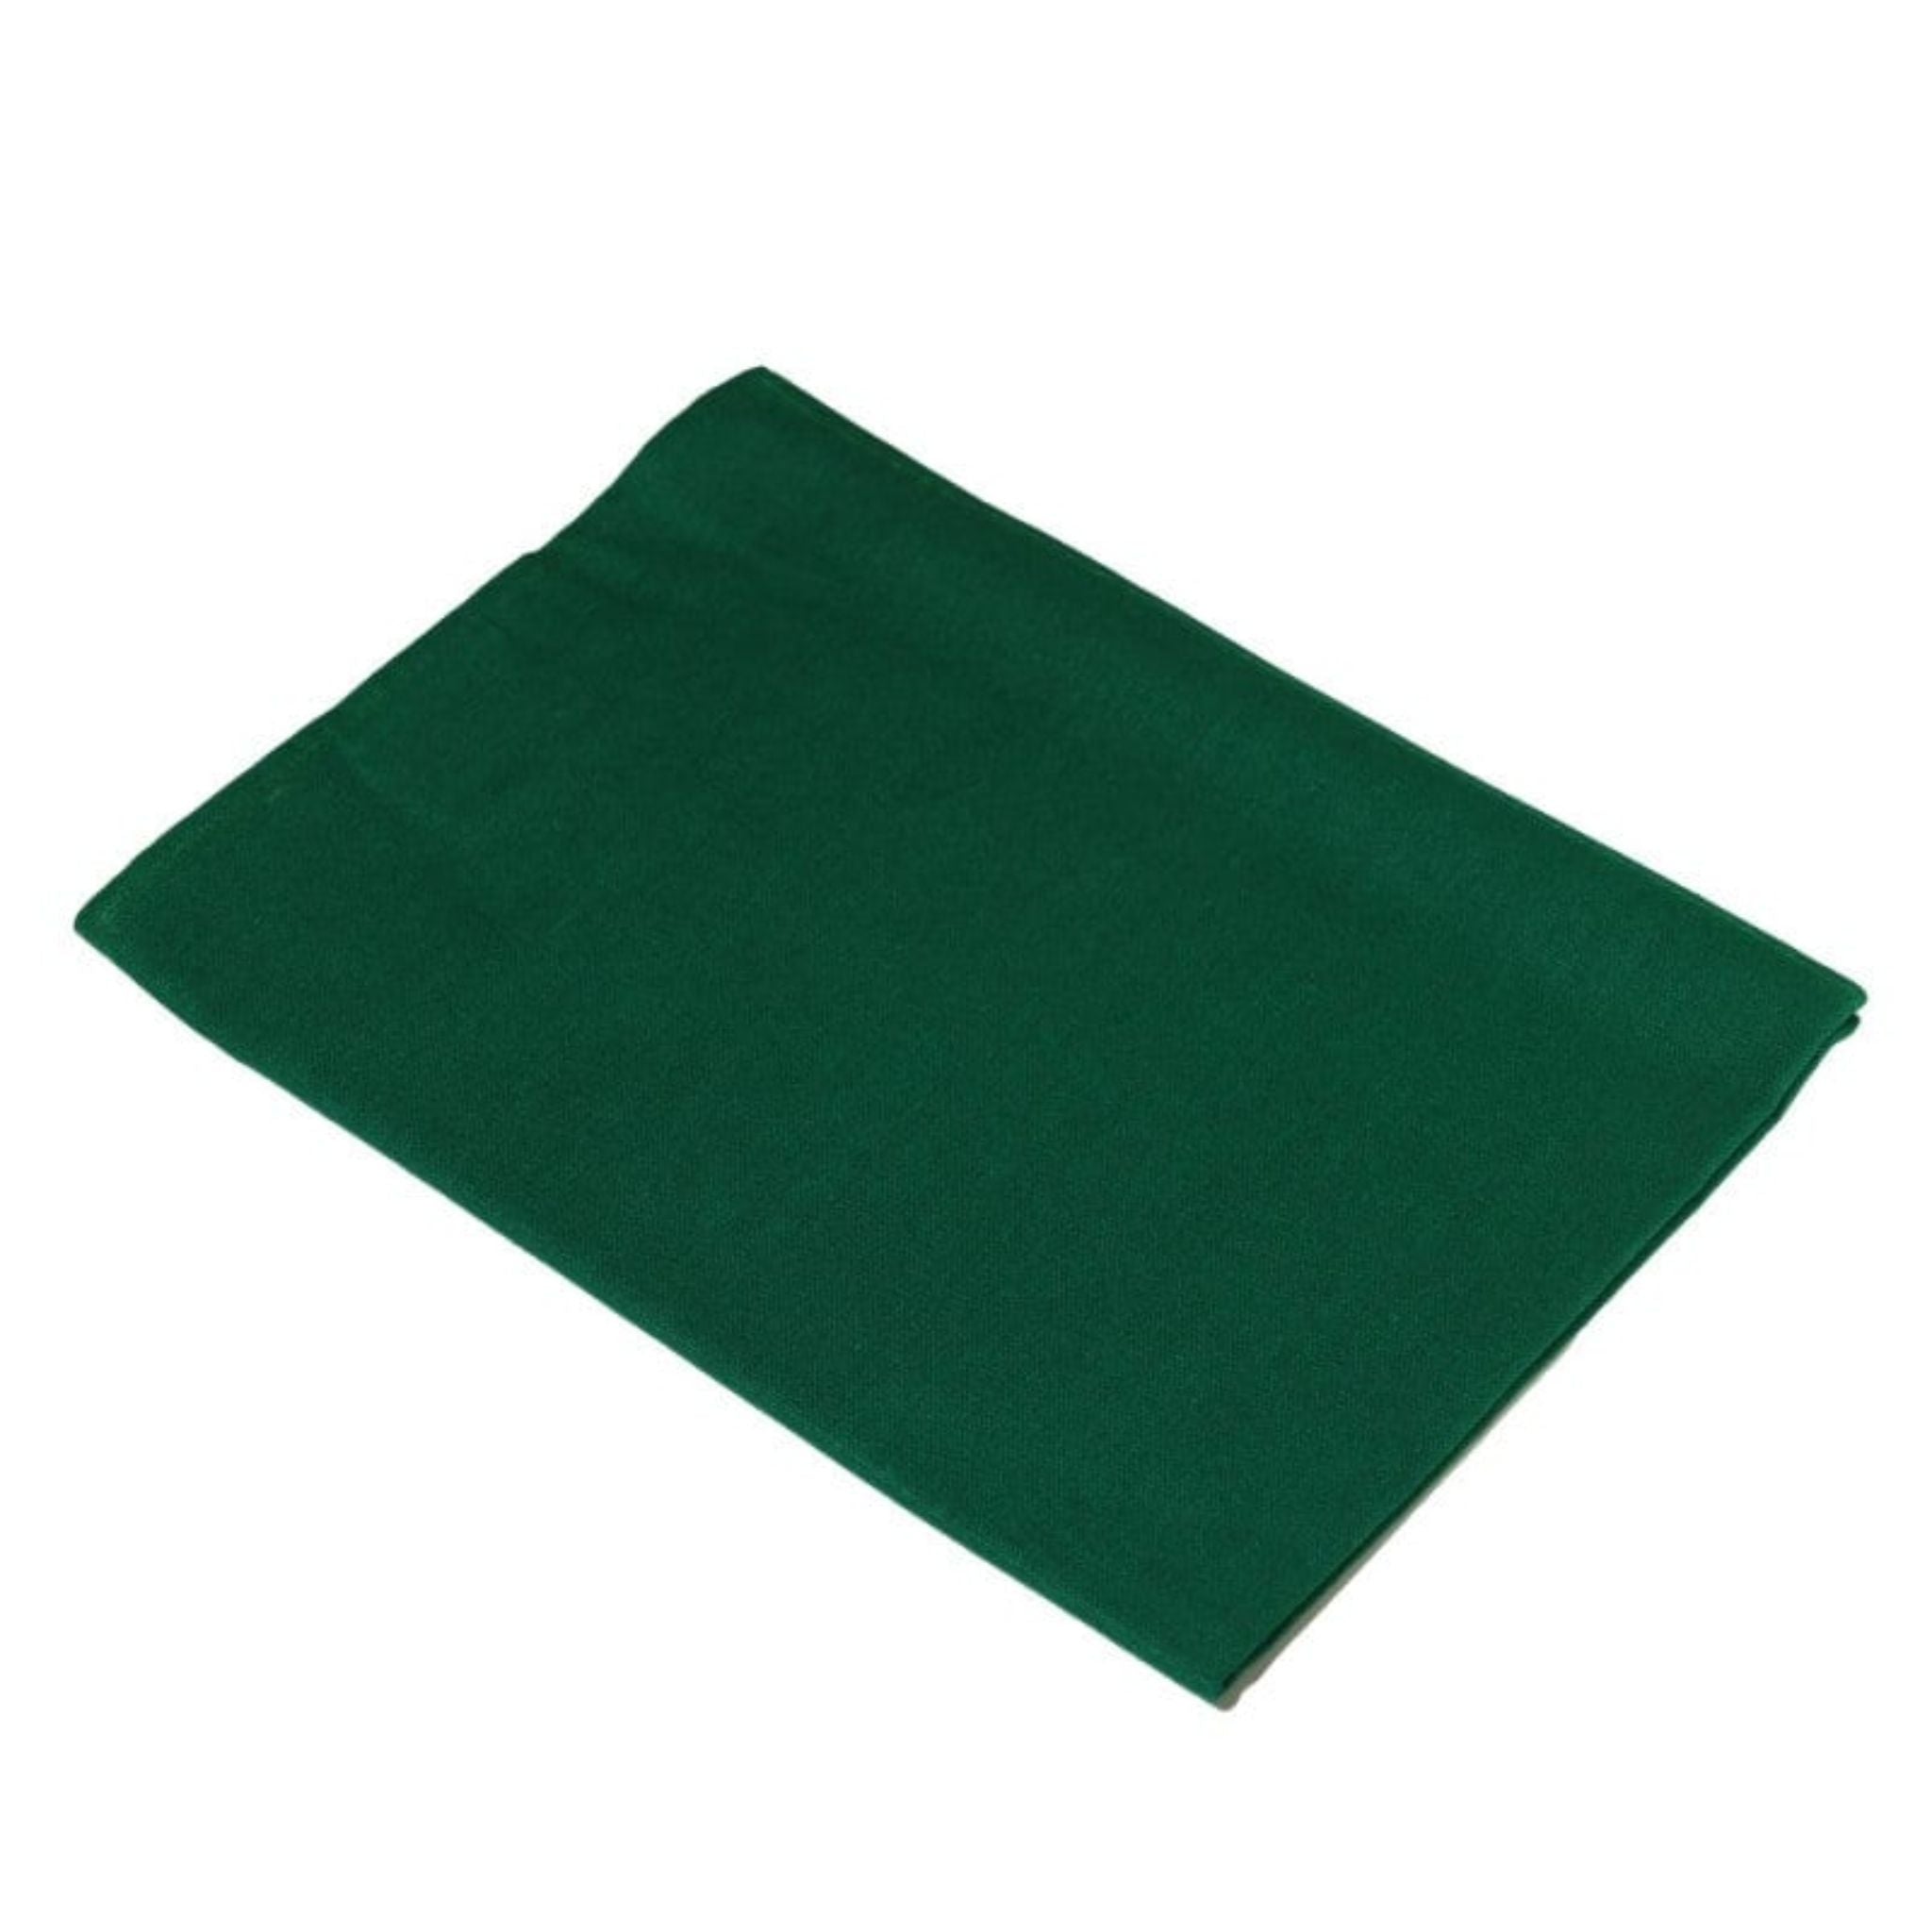 Reusable surgical drape green